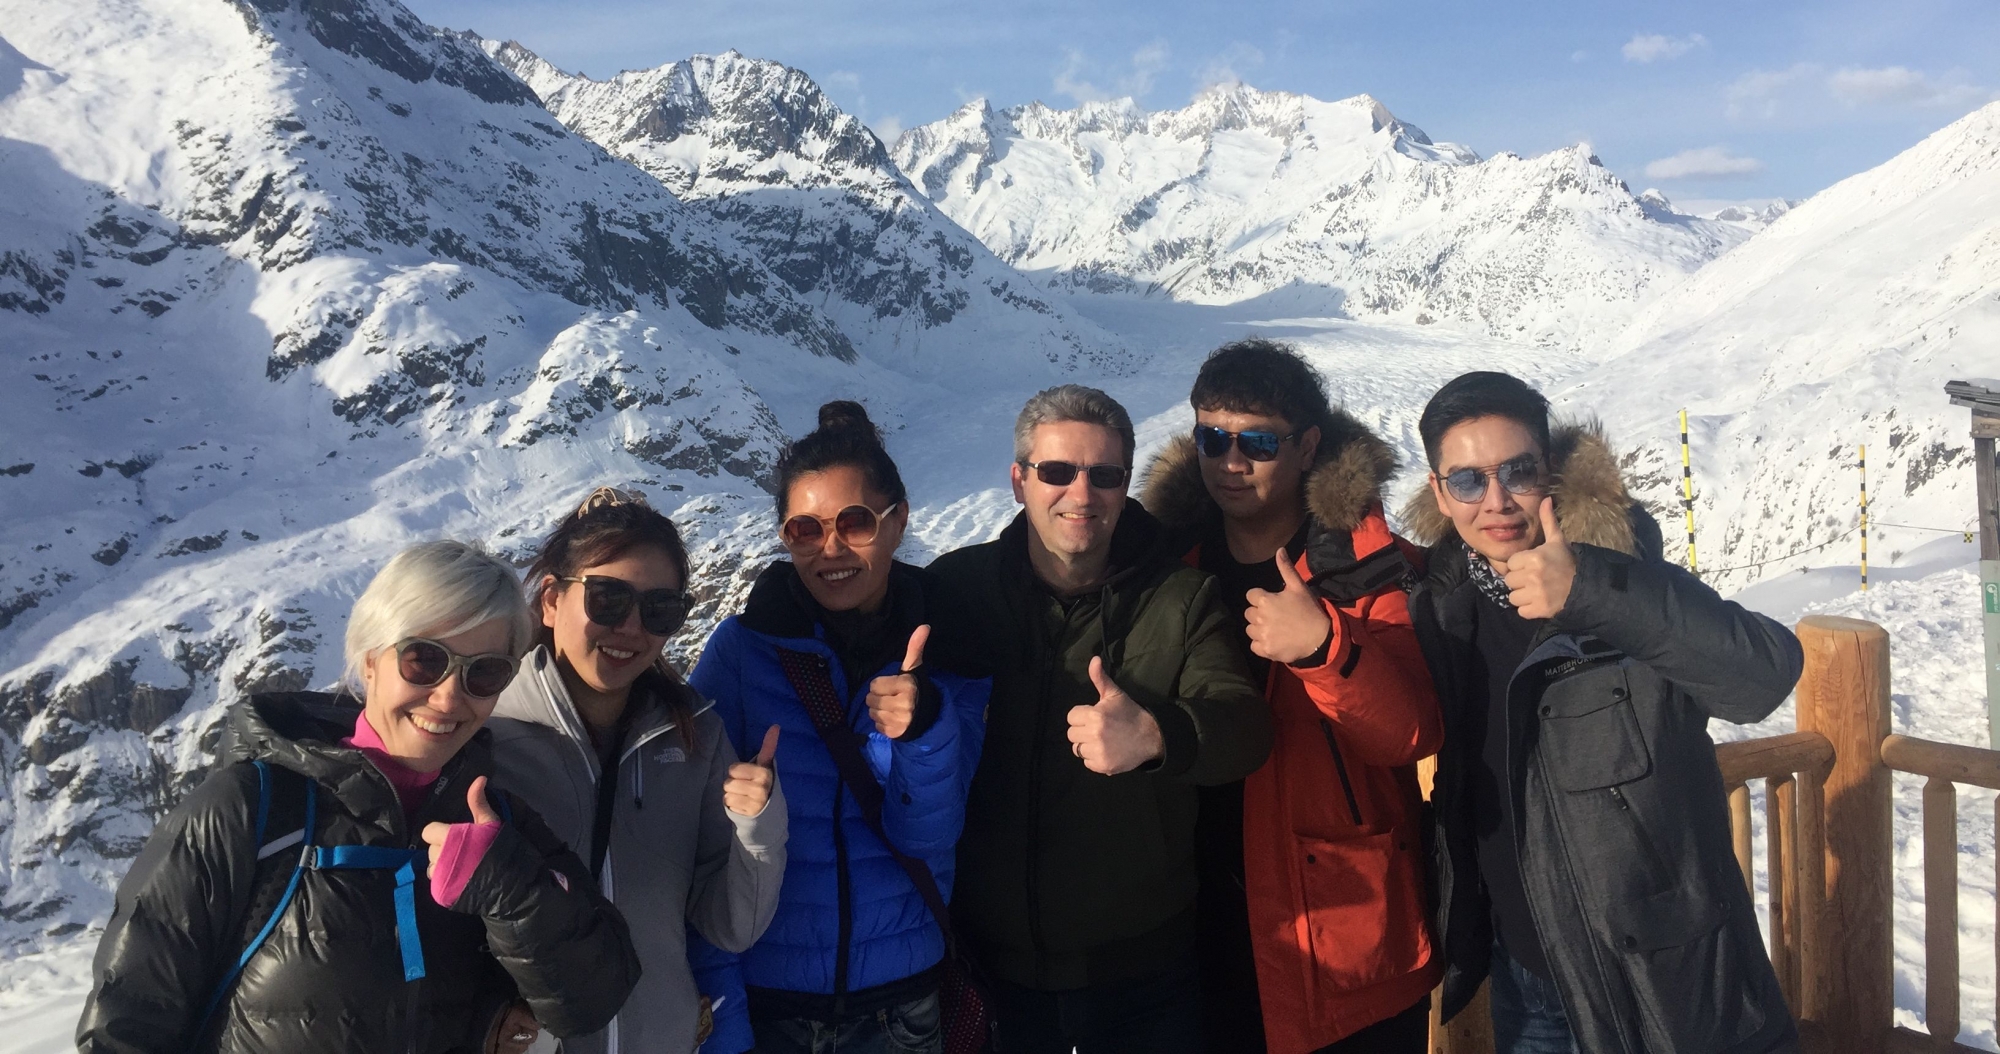 L’équipe de Matterhorn Region SA devant le Glacier d’Aletsch.